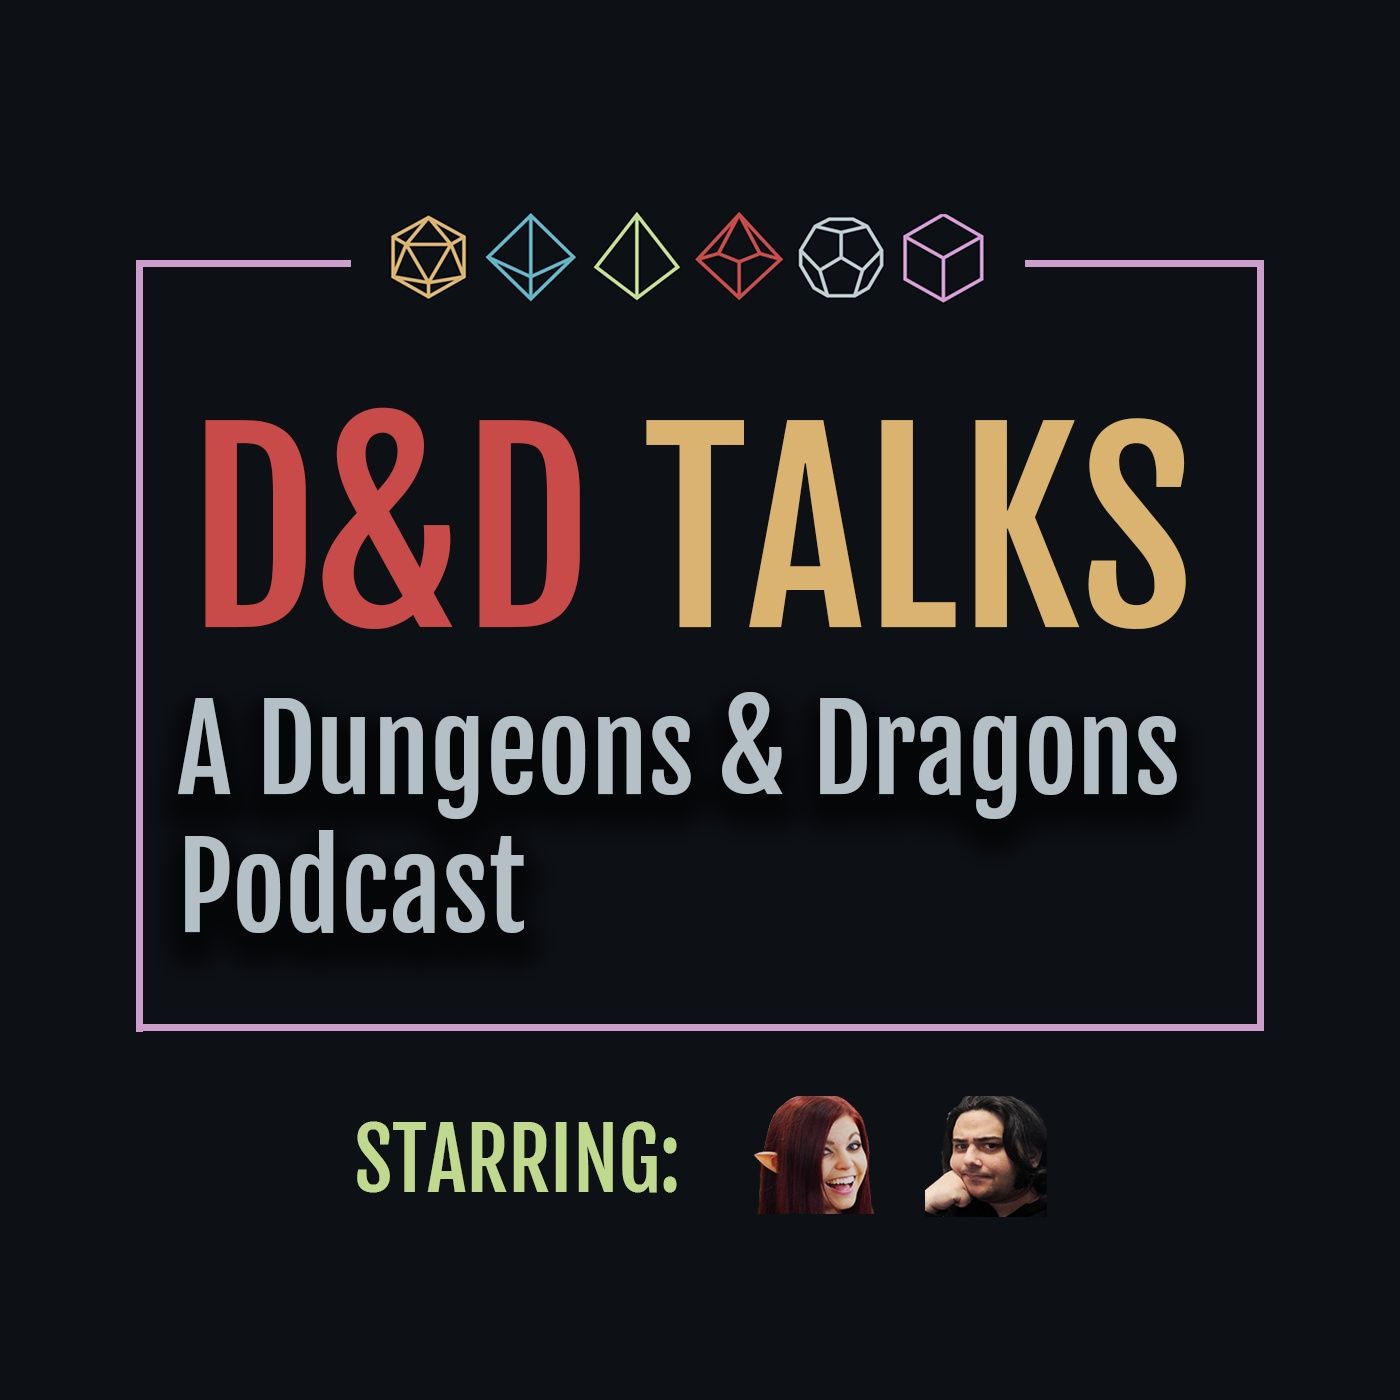 D&D Talks